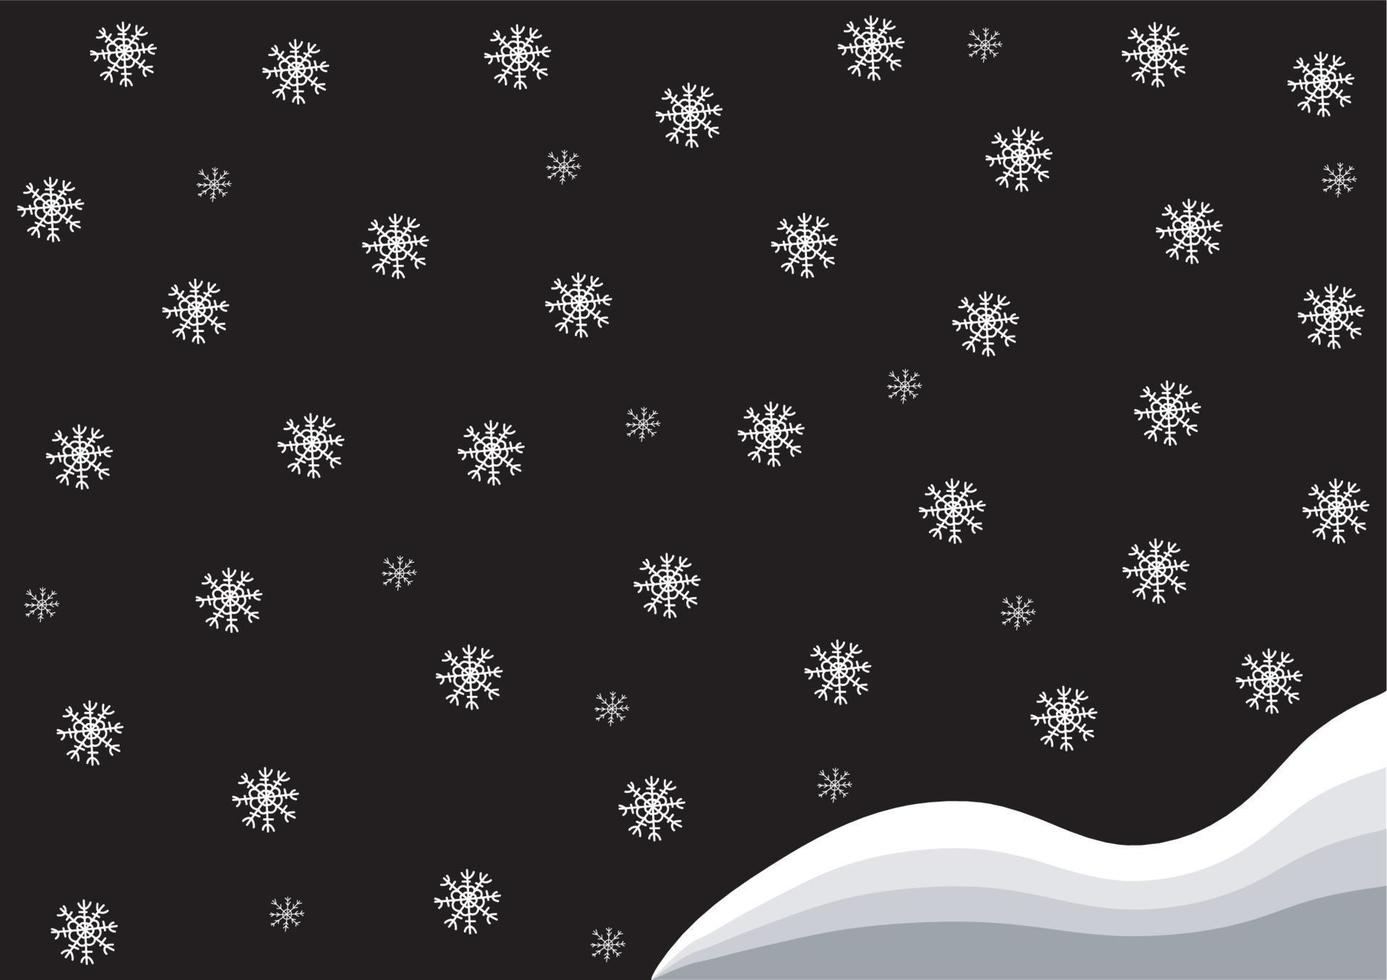 zwart-wit winter doodle achtergrond vector